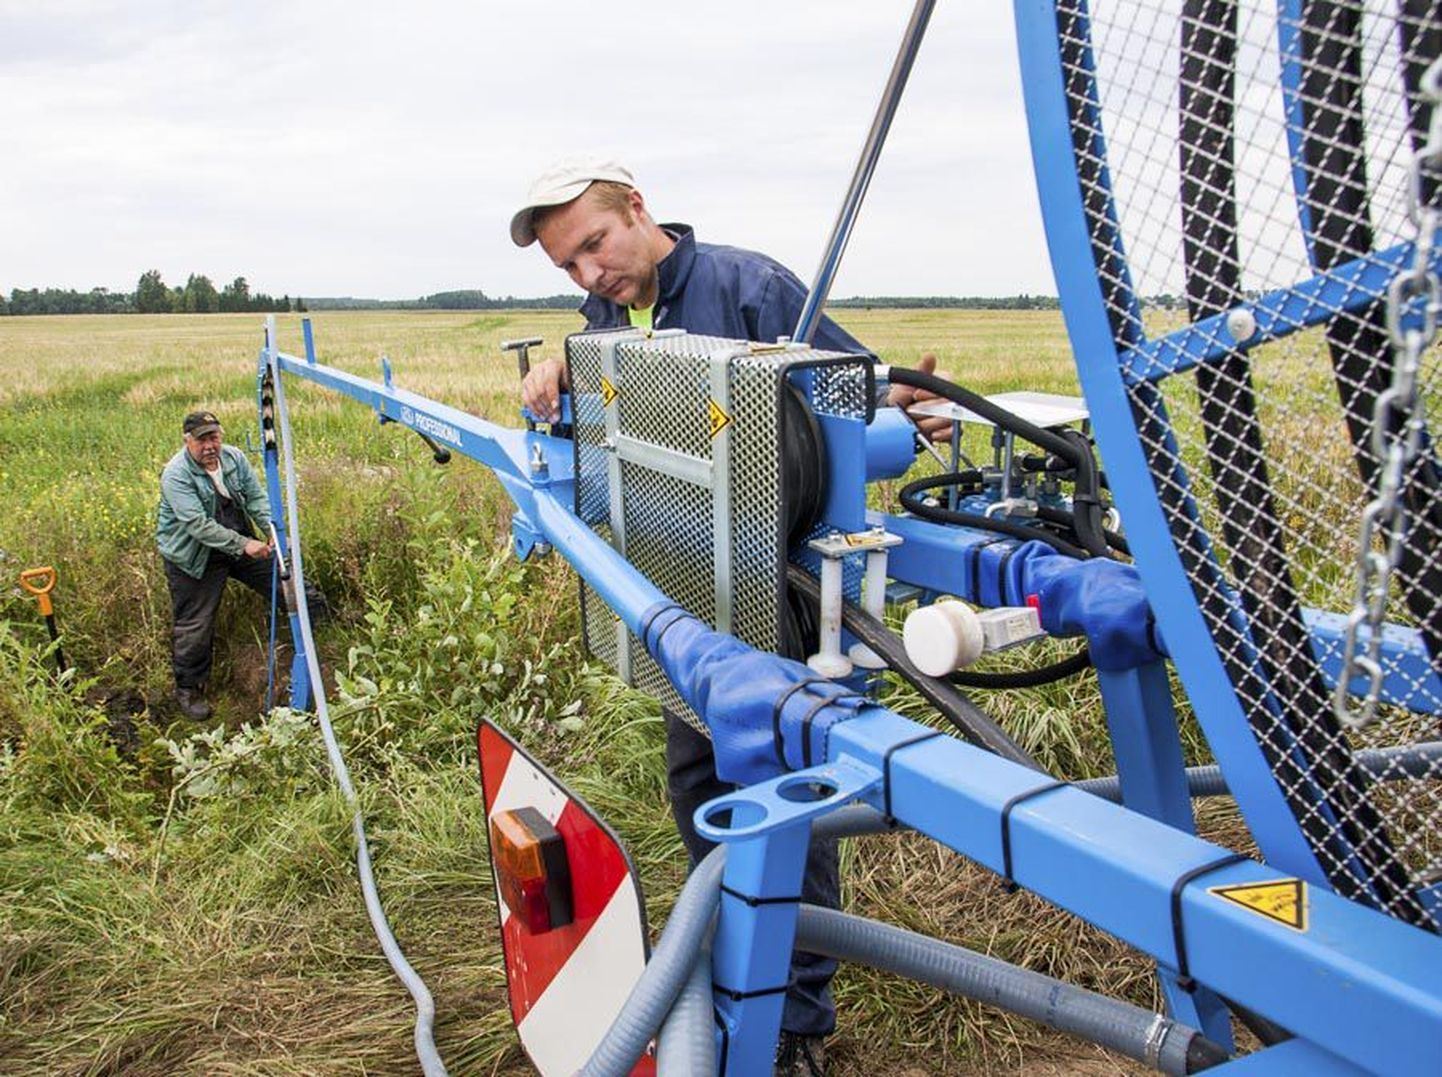 Töömehed Kullar Hunt (taga) ja Kunnar Hunt (ees) sätivad Eestis vähe levinud drenaažipesumasinat, et pesta puhtaks Kaarli küla maaparandus-arendusühingu põldude kuivendussüsteemi torud.